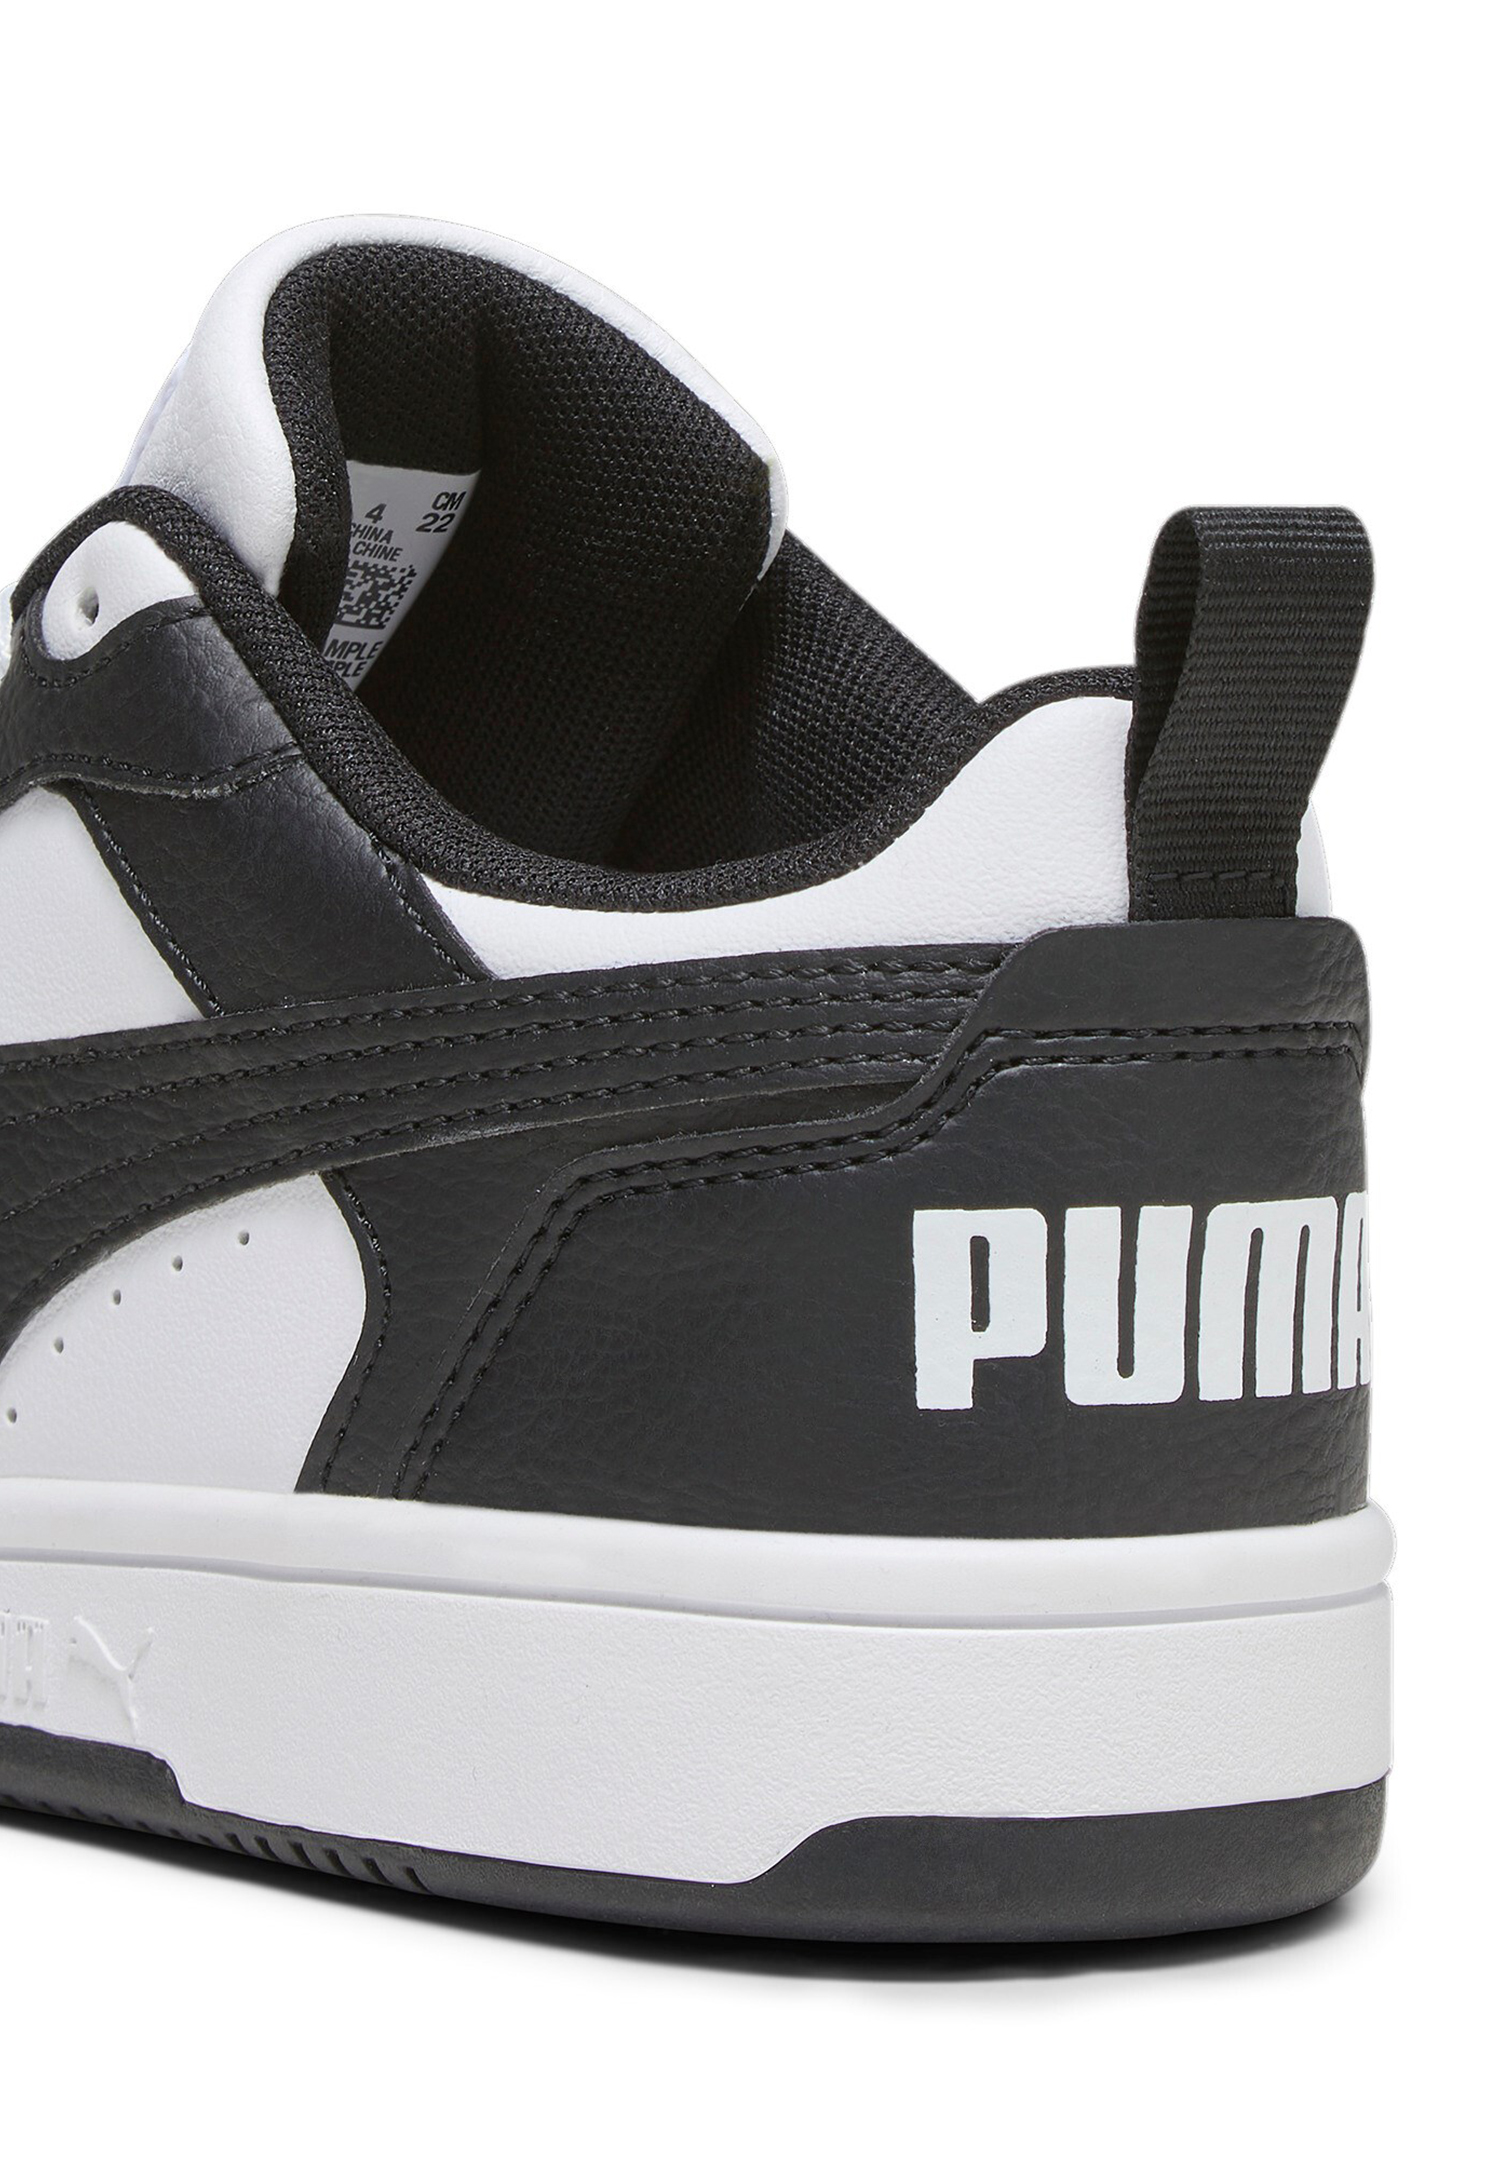 Puma Rebound V6 LOW JR Unisex Kinder Sneaker 393833 01